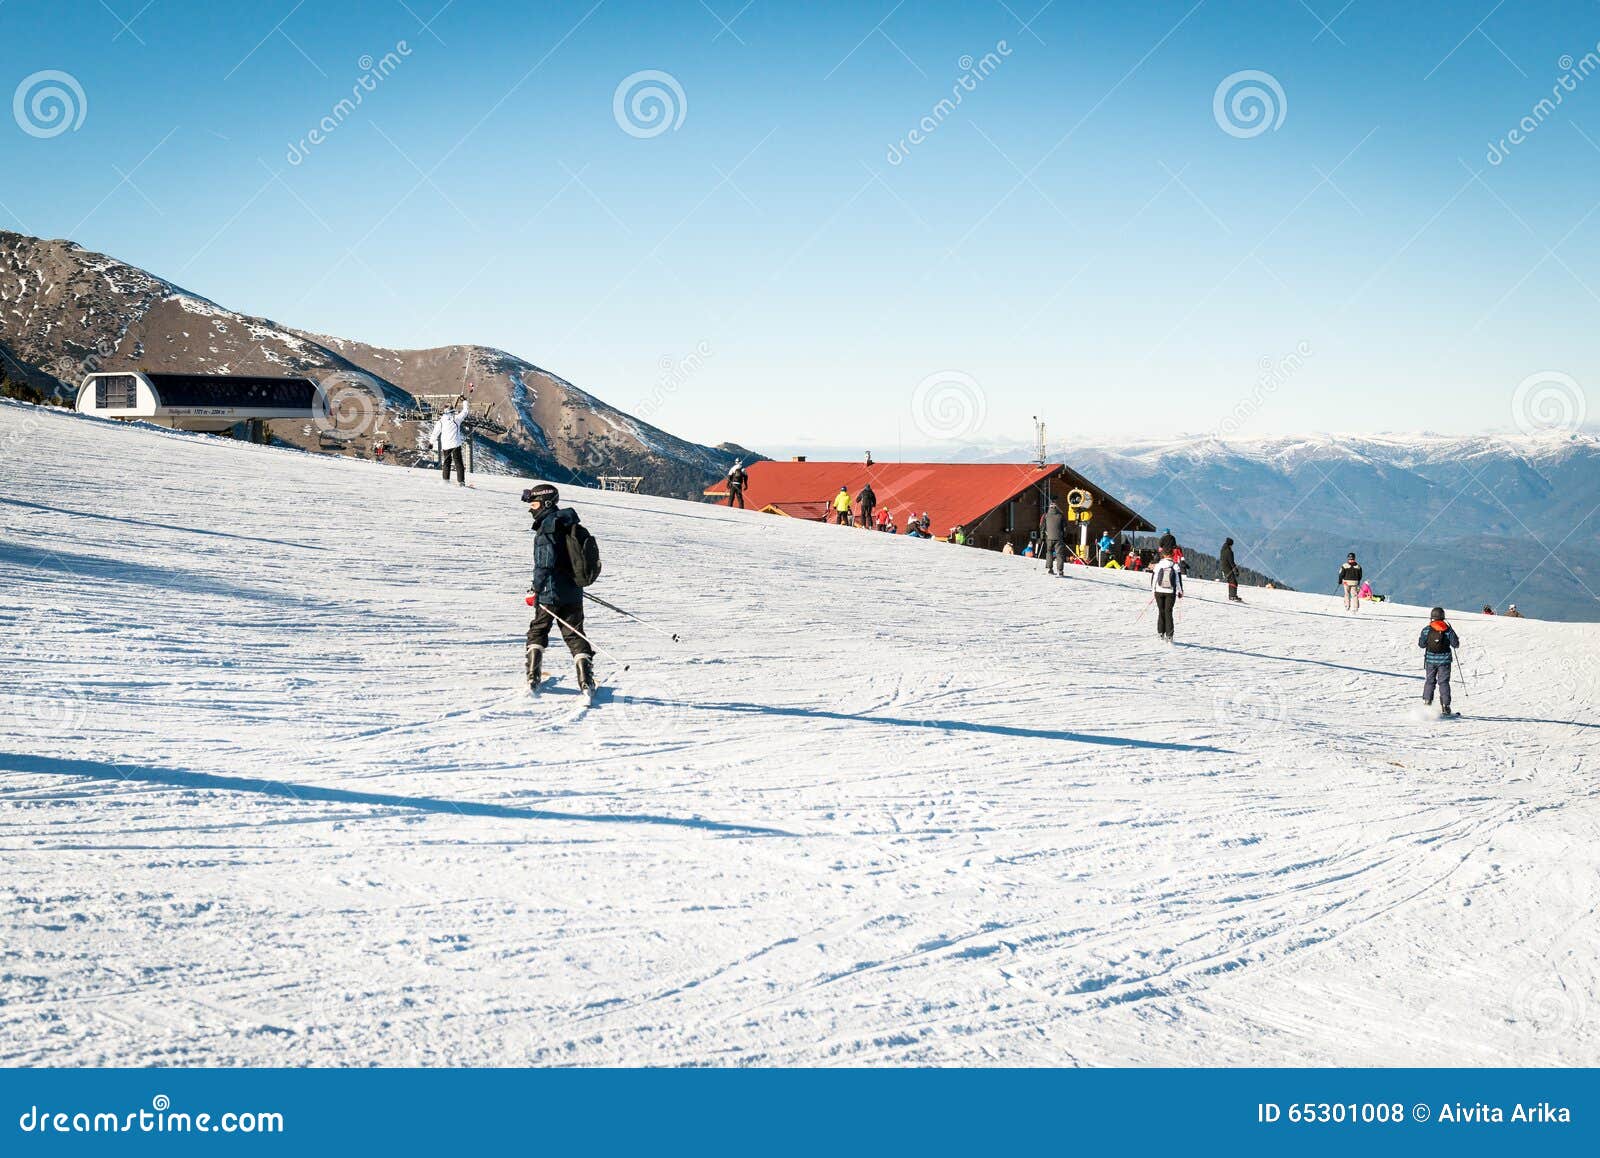 Bansko Ski Resort In Bulgaria Editorial Stock Photo Image Of Snowboarding Labelling